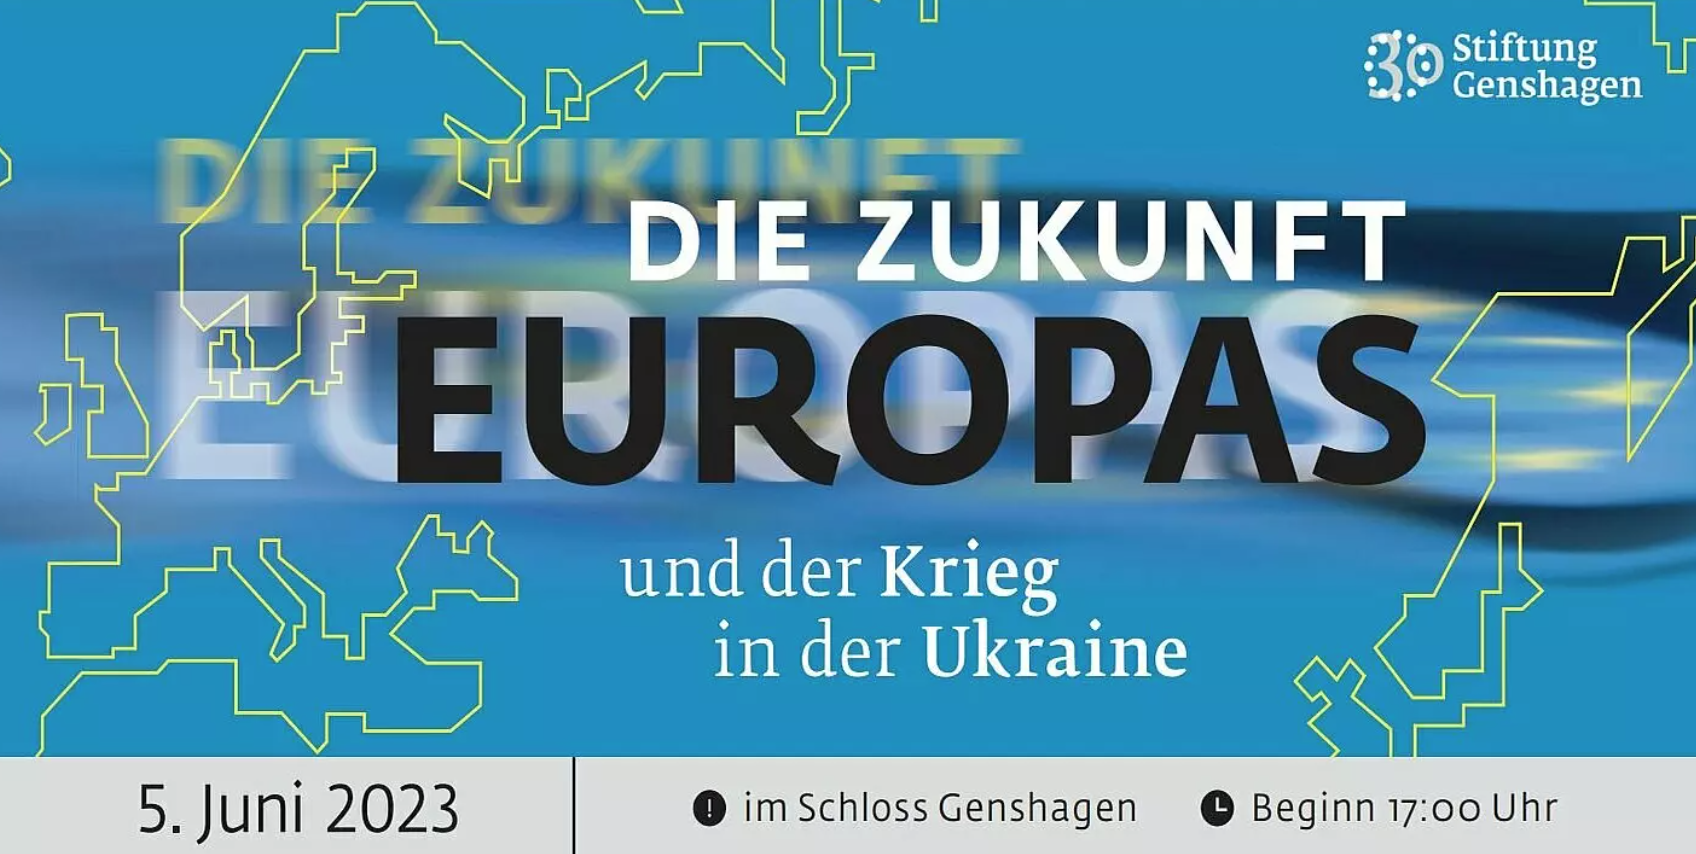 30 Jahre Stiftung Genshagen: Die Zukunft Europas und der Krieg in der Ukraine